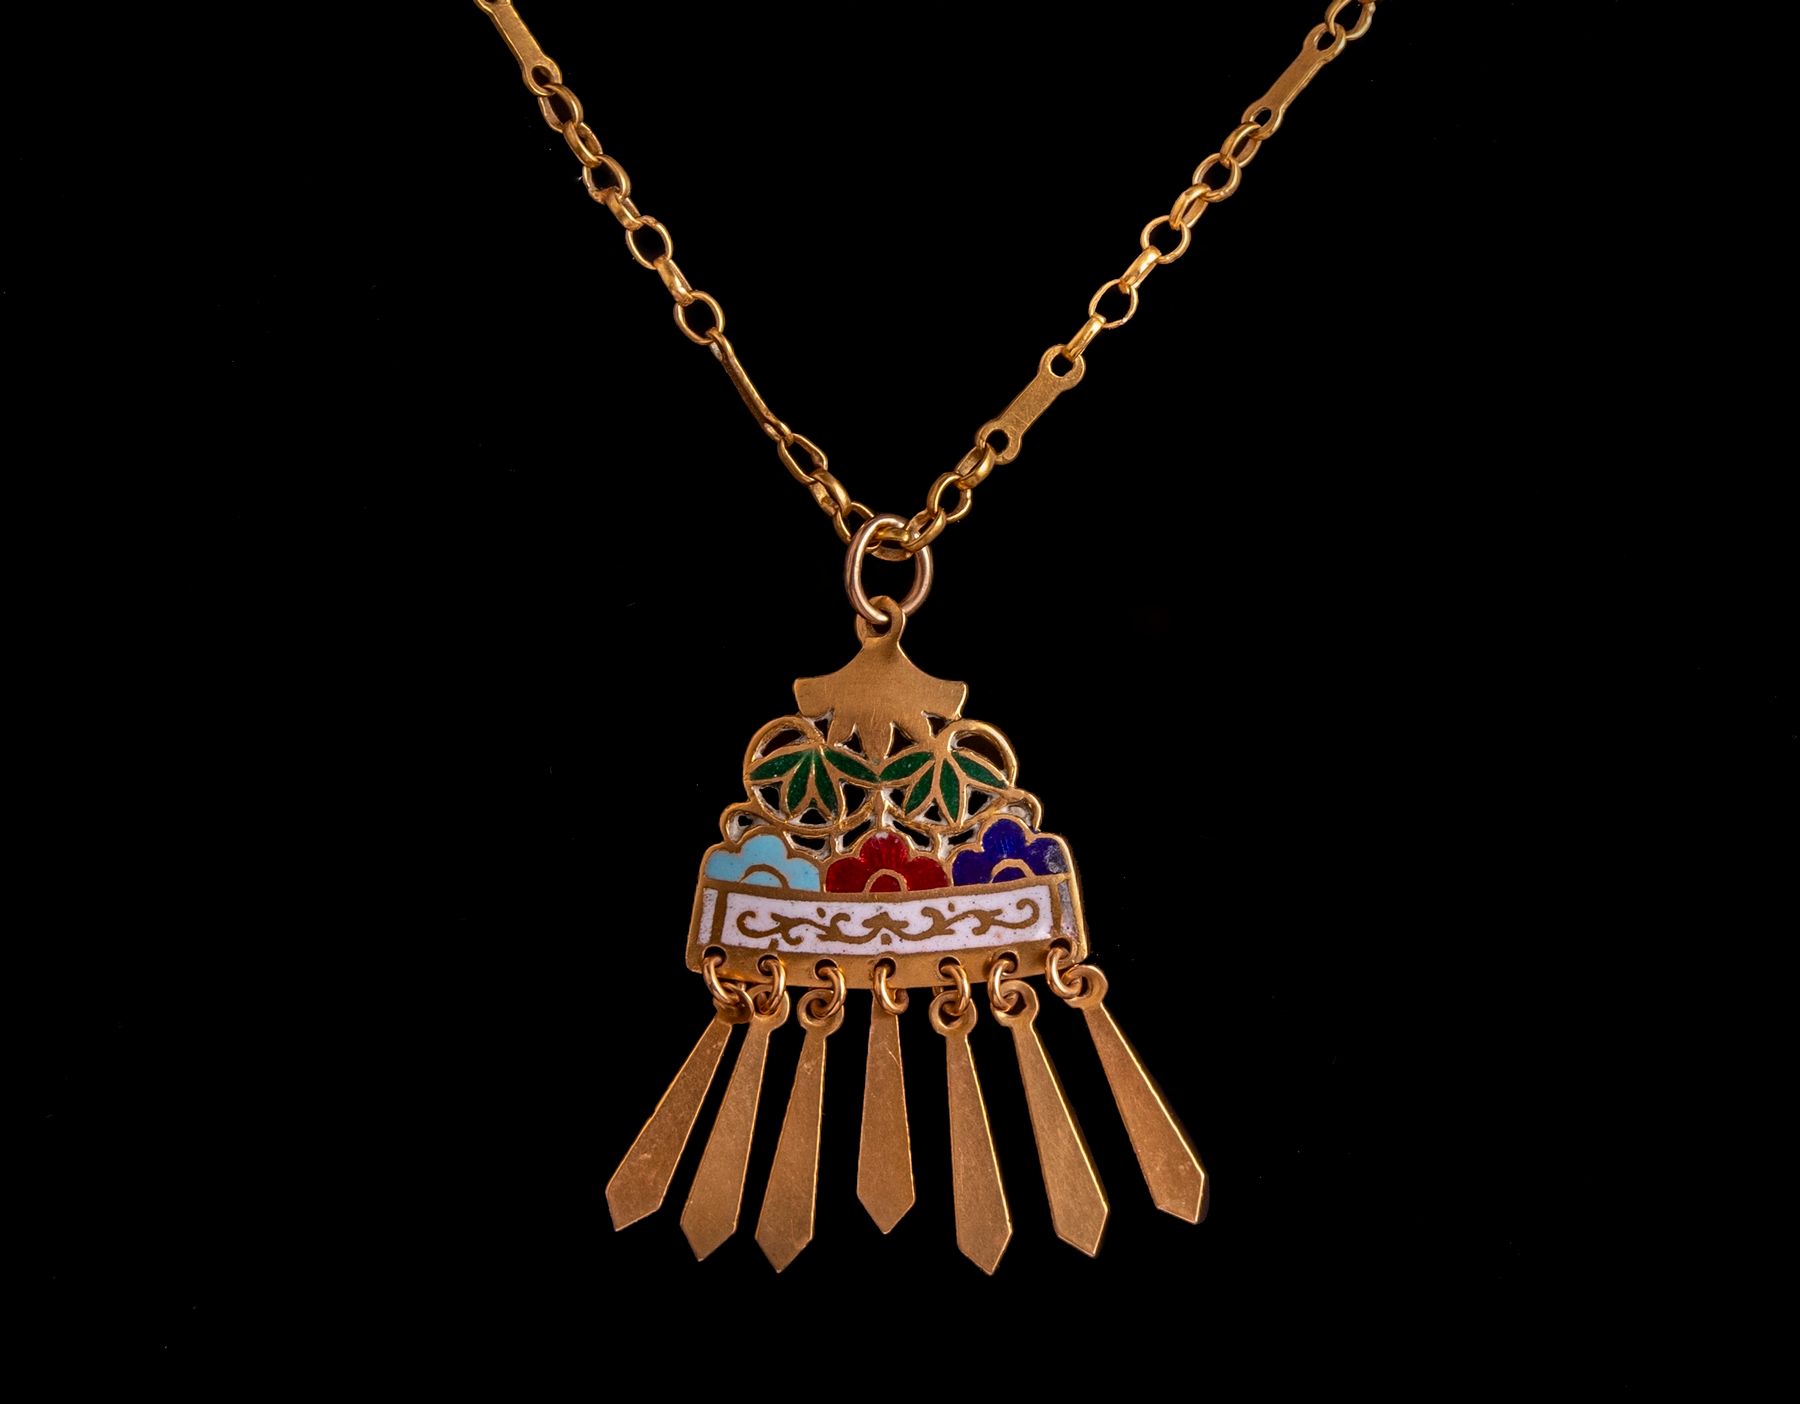 Iraqi Gold Necklace and Pendant Collier et pendentif irakiens en or 21K. Le pend&hellip;